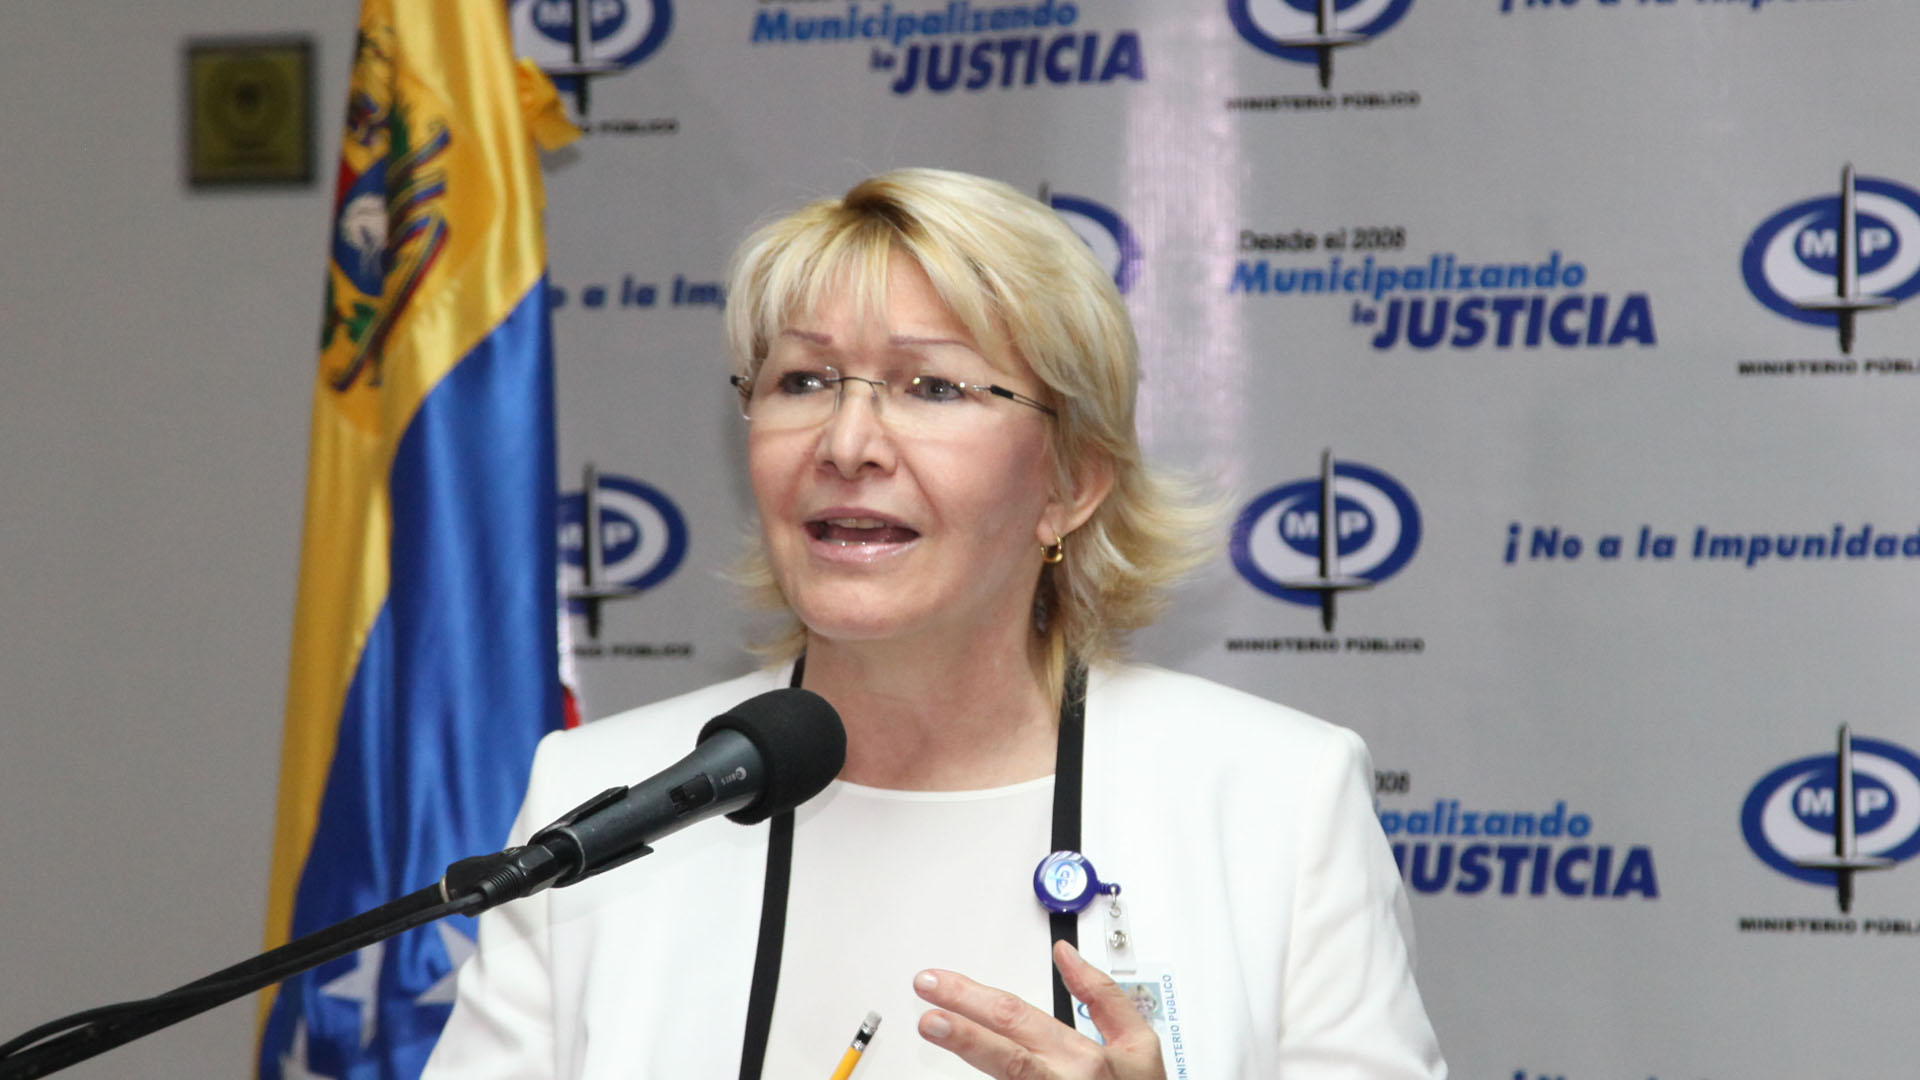 La fiscal general, Luisa Ortega Diaz afirmó que la Constitución lo prohíbe de manera expresa